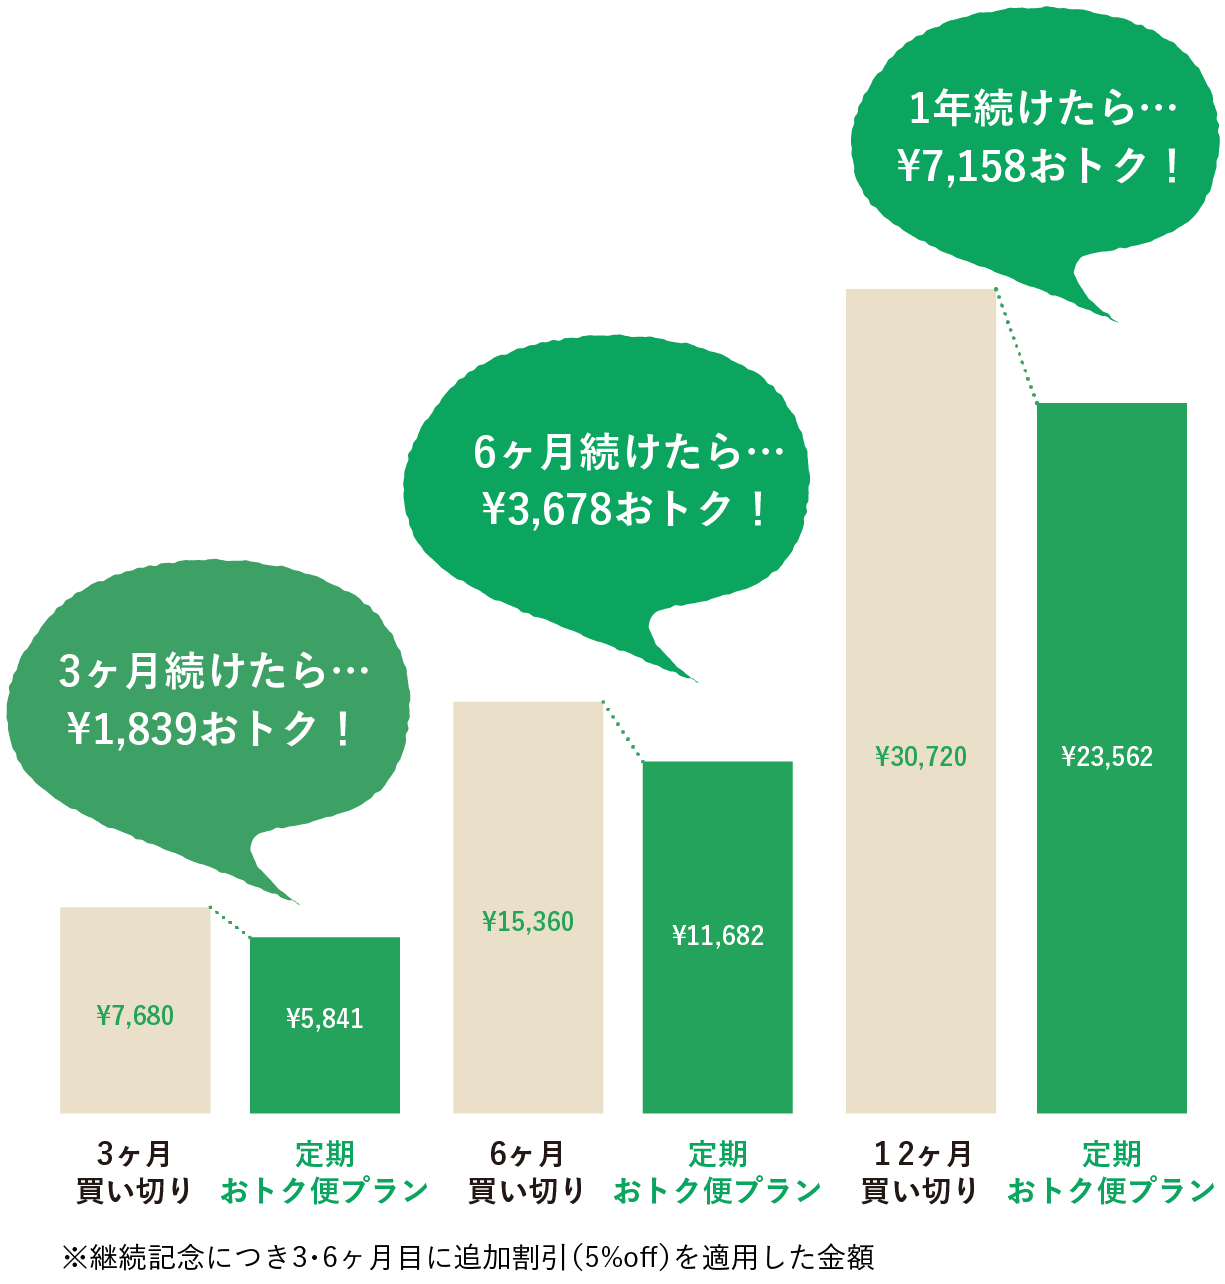 比較グラフ：3ヶ月続けたら…¥1,840おトク！ 6ヶ月続けたら…¥3,680おトク！ 1年続けたら…¥7,160おトク！